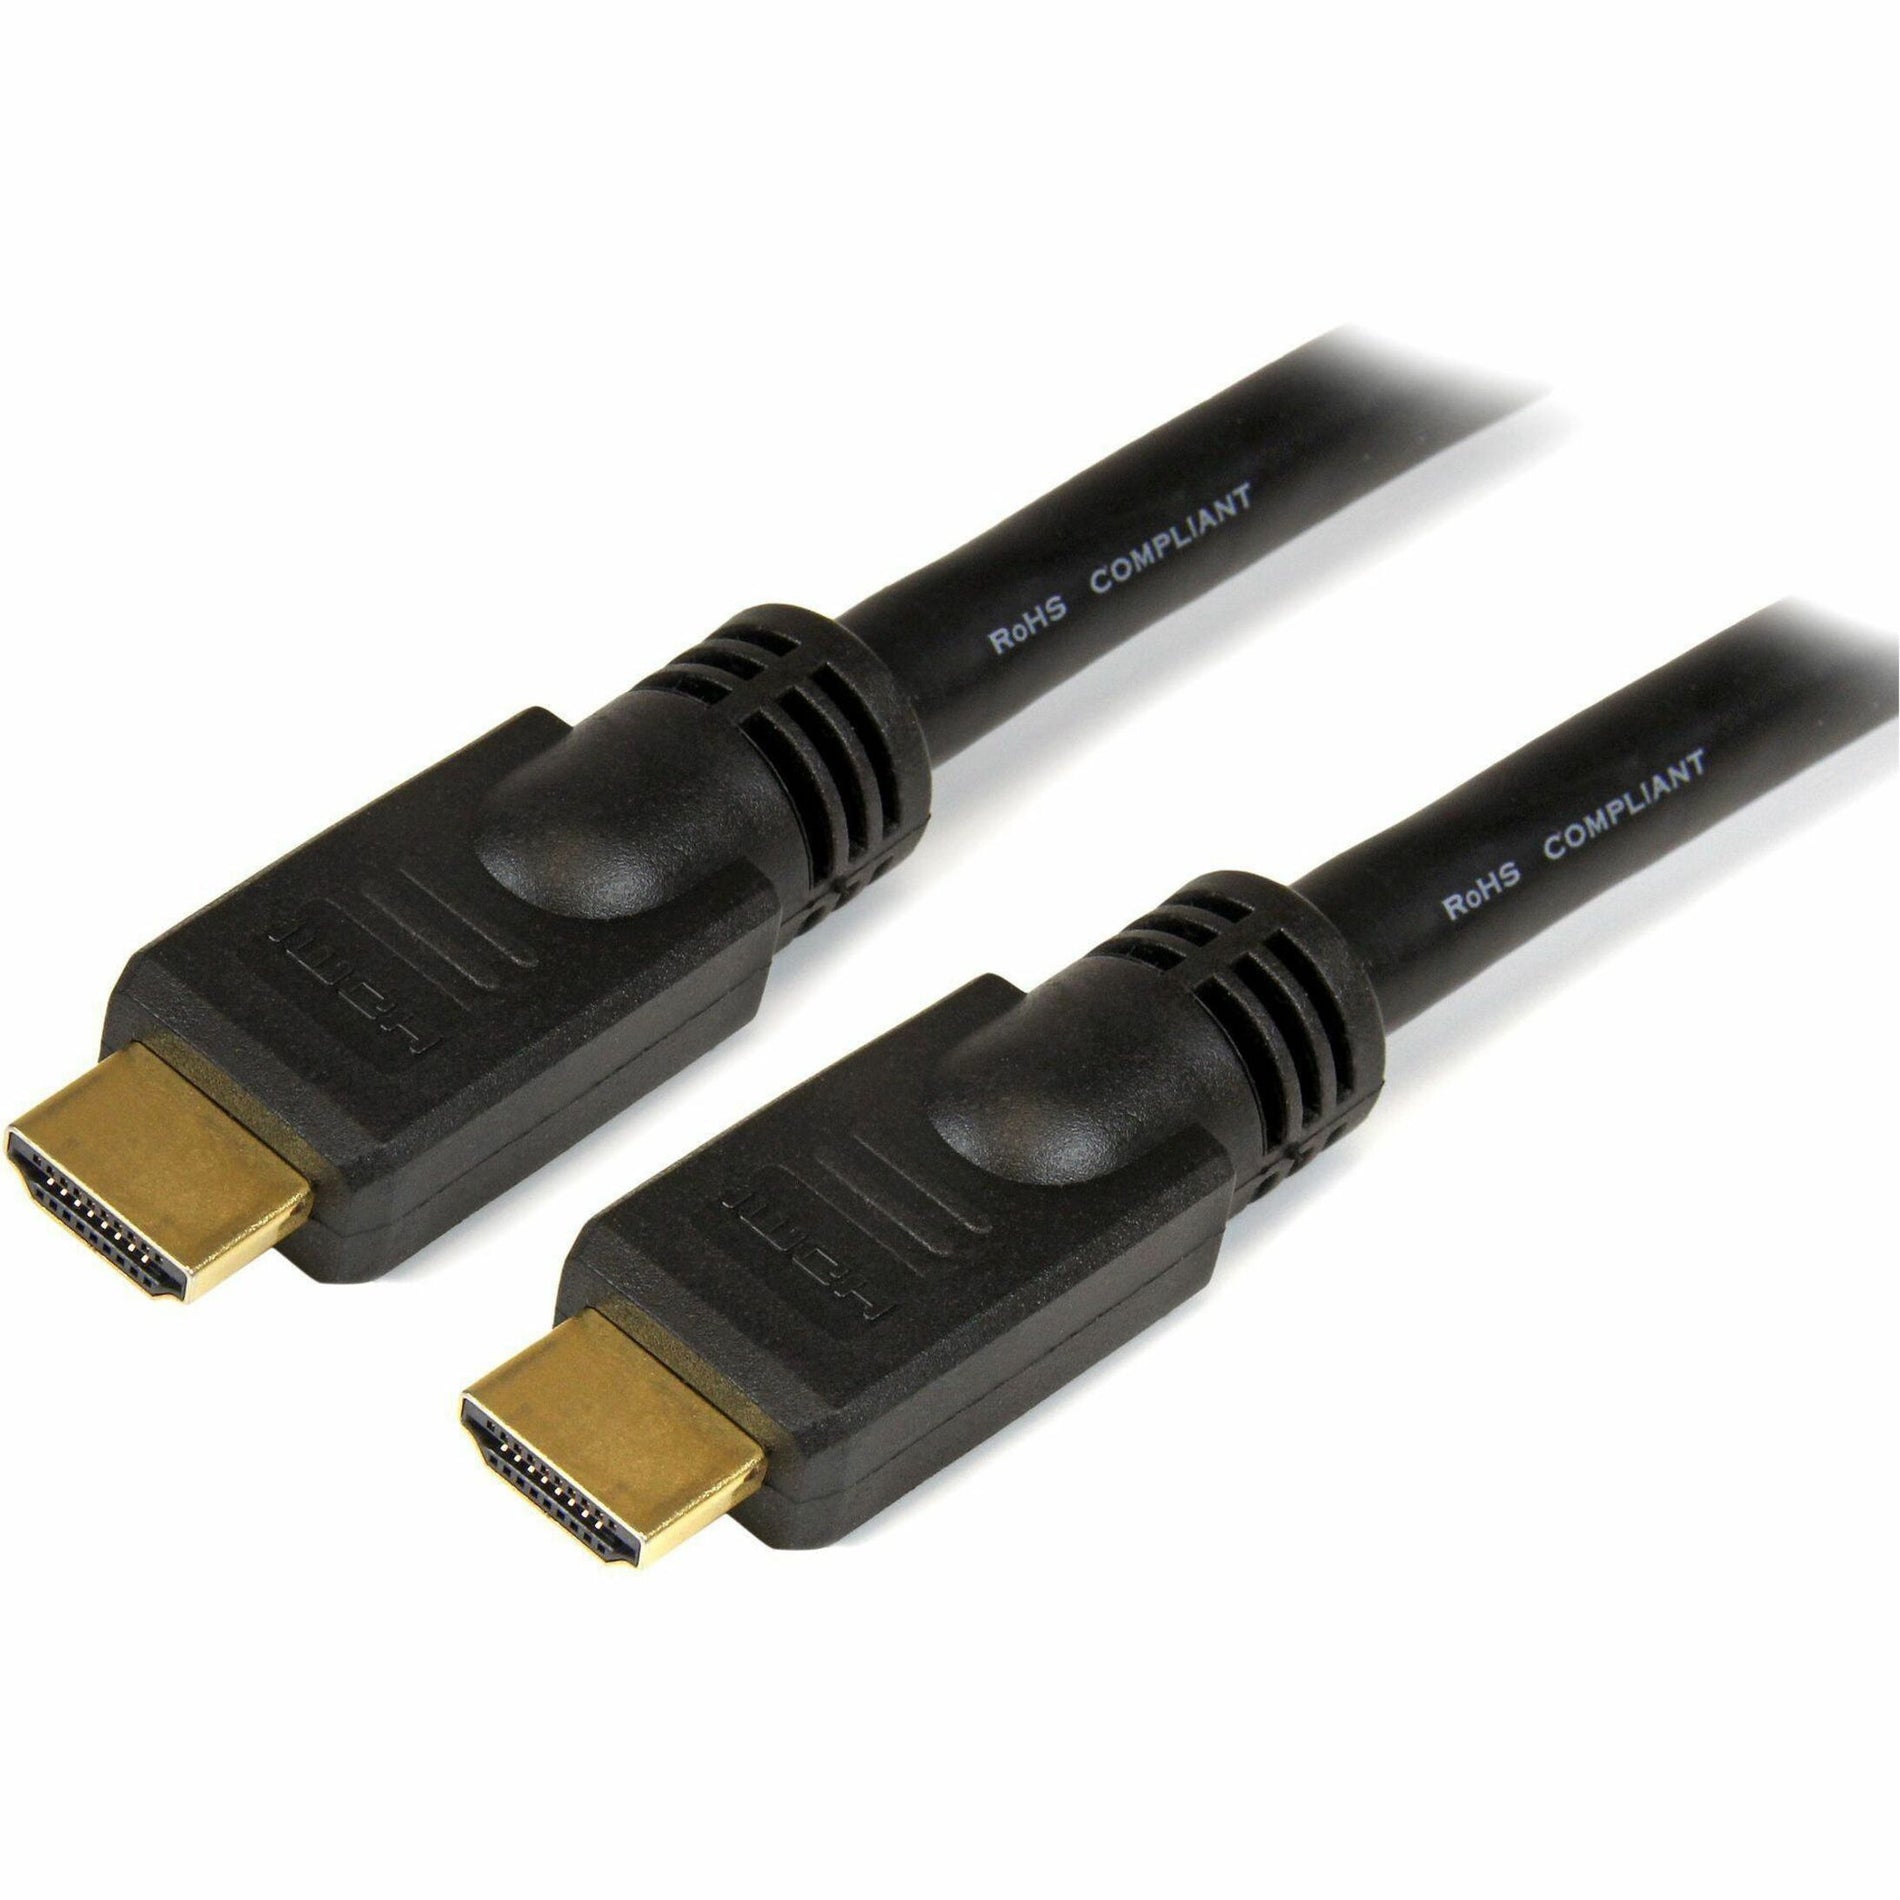 StarTech.com HDMM30 30 ft High Speed HDMI Kabel - Ultra HD 4k x 2k HDMI Kabel